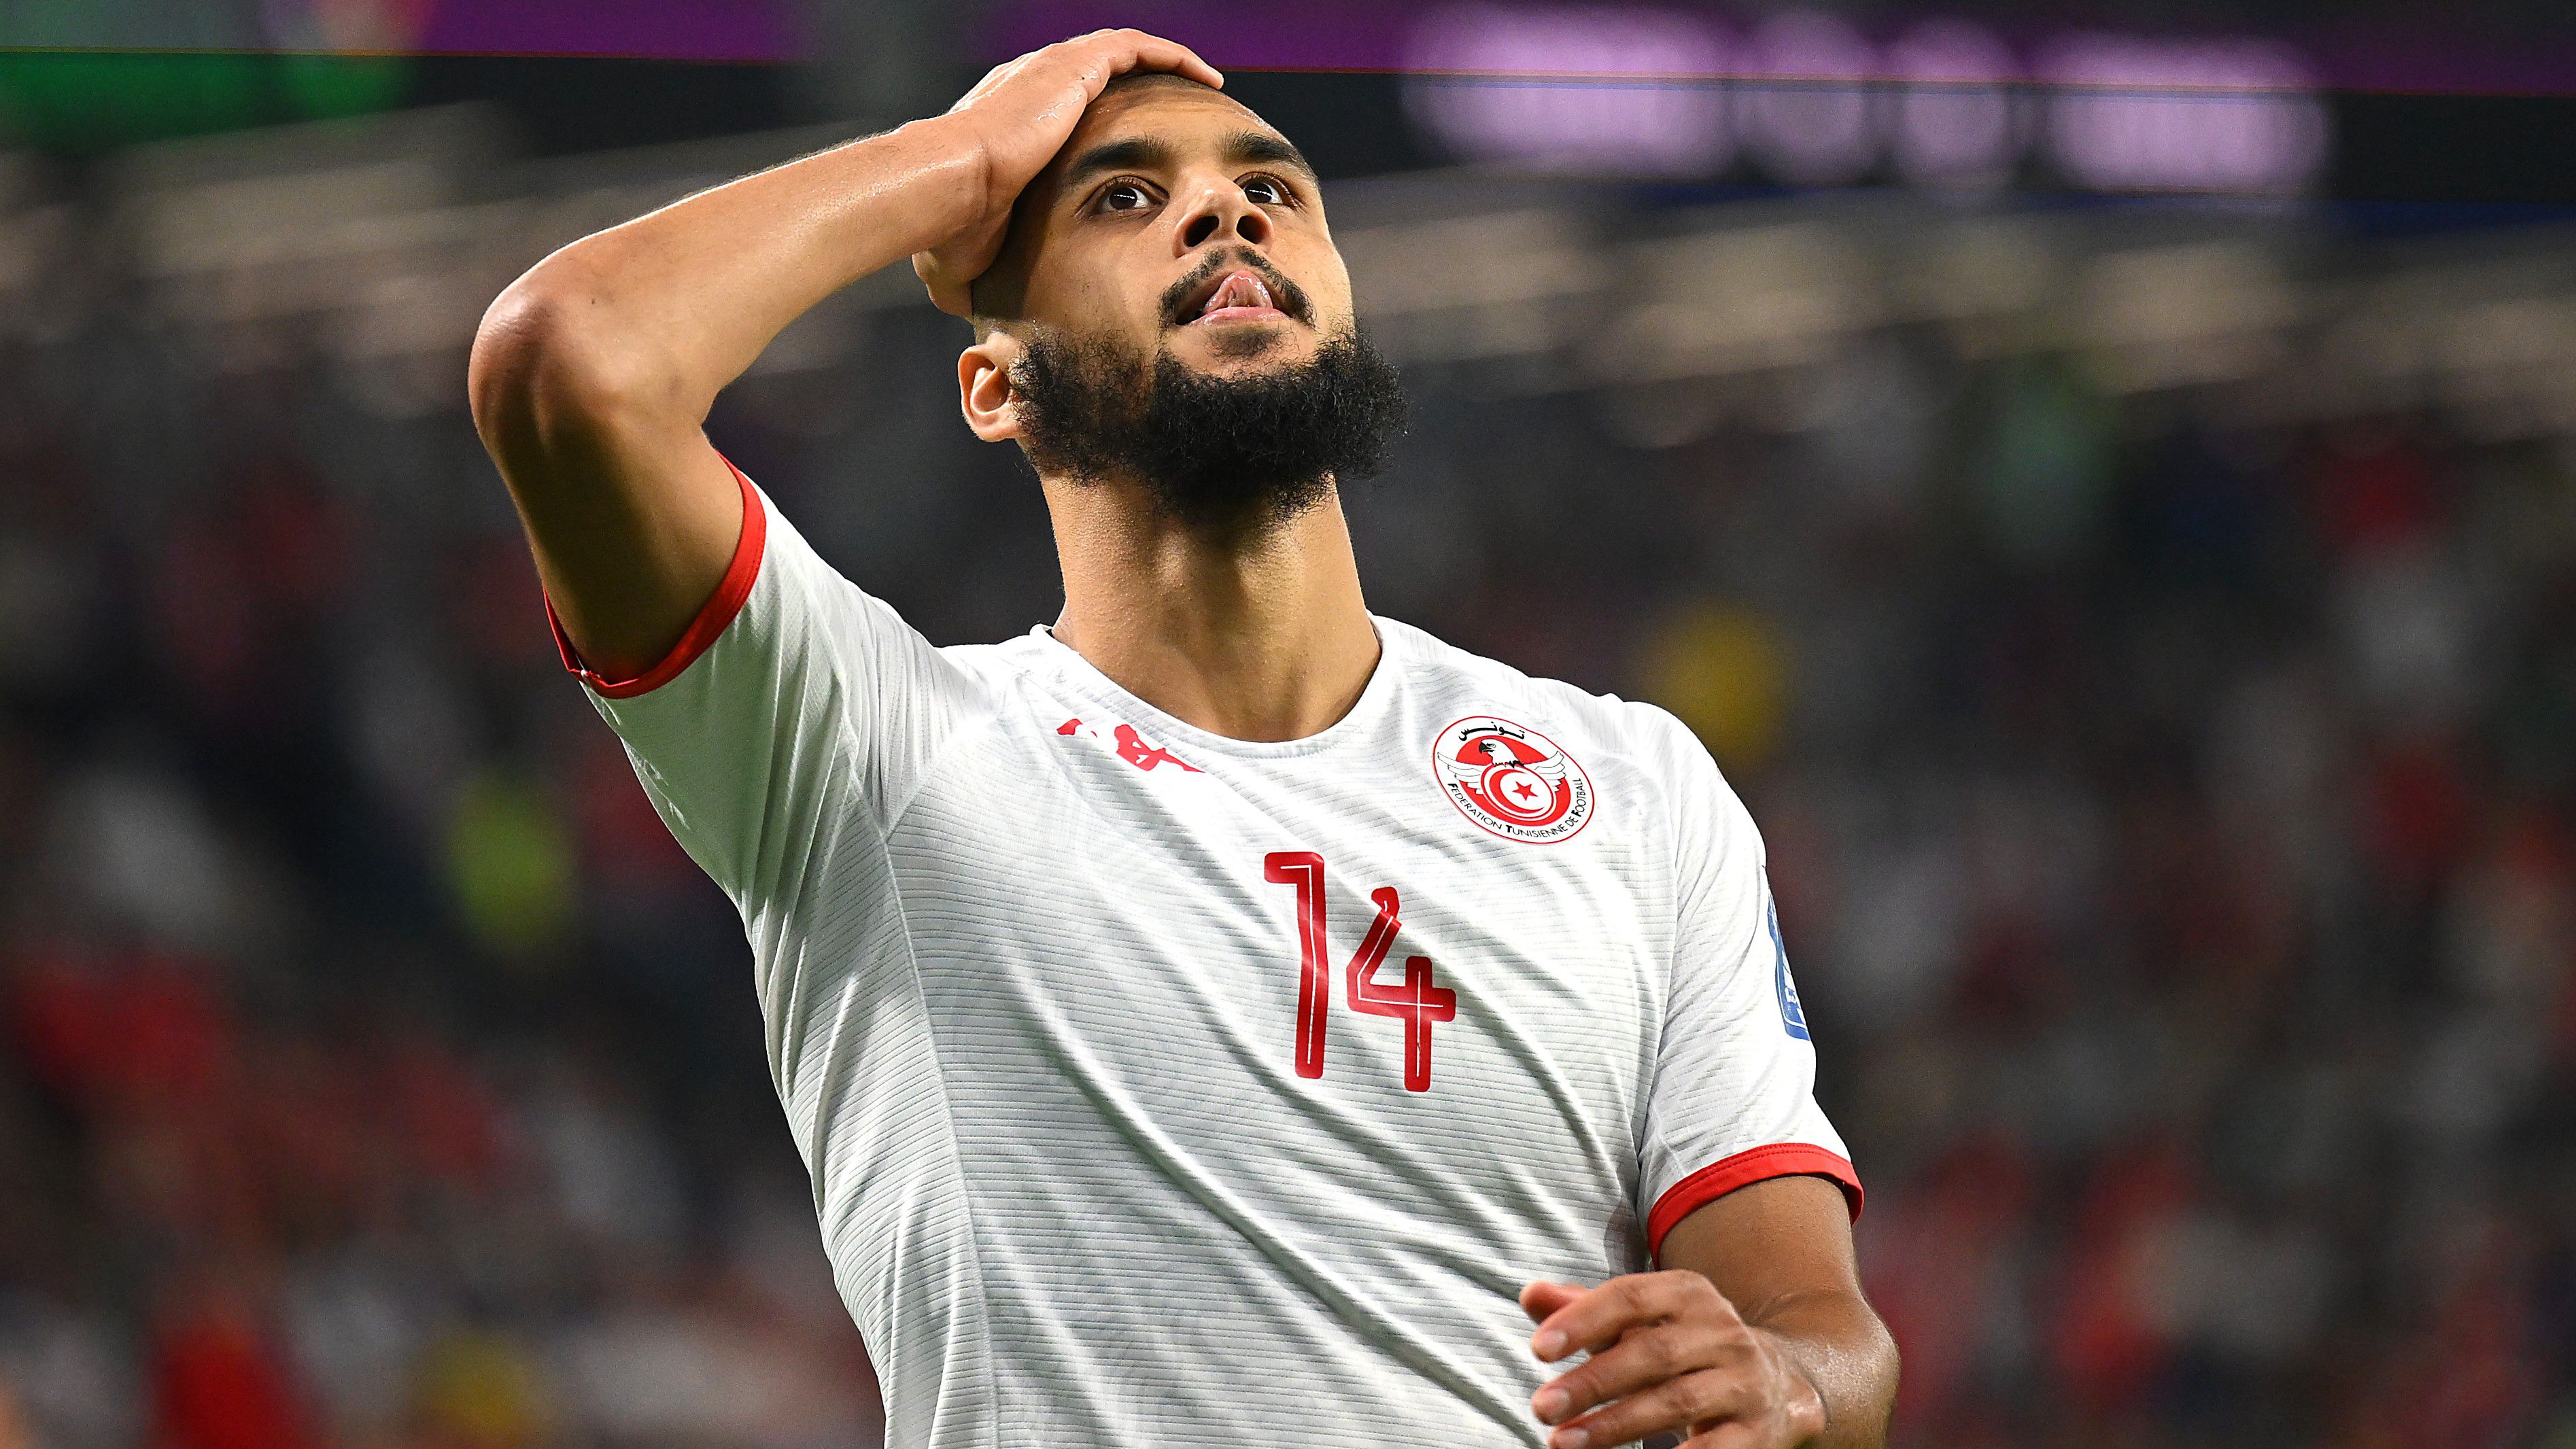 Laidouni nagyot futballozott, Tunézia nyert, de így sem sikerült kiharcolnia a továbbjutást